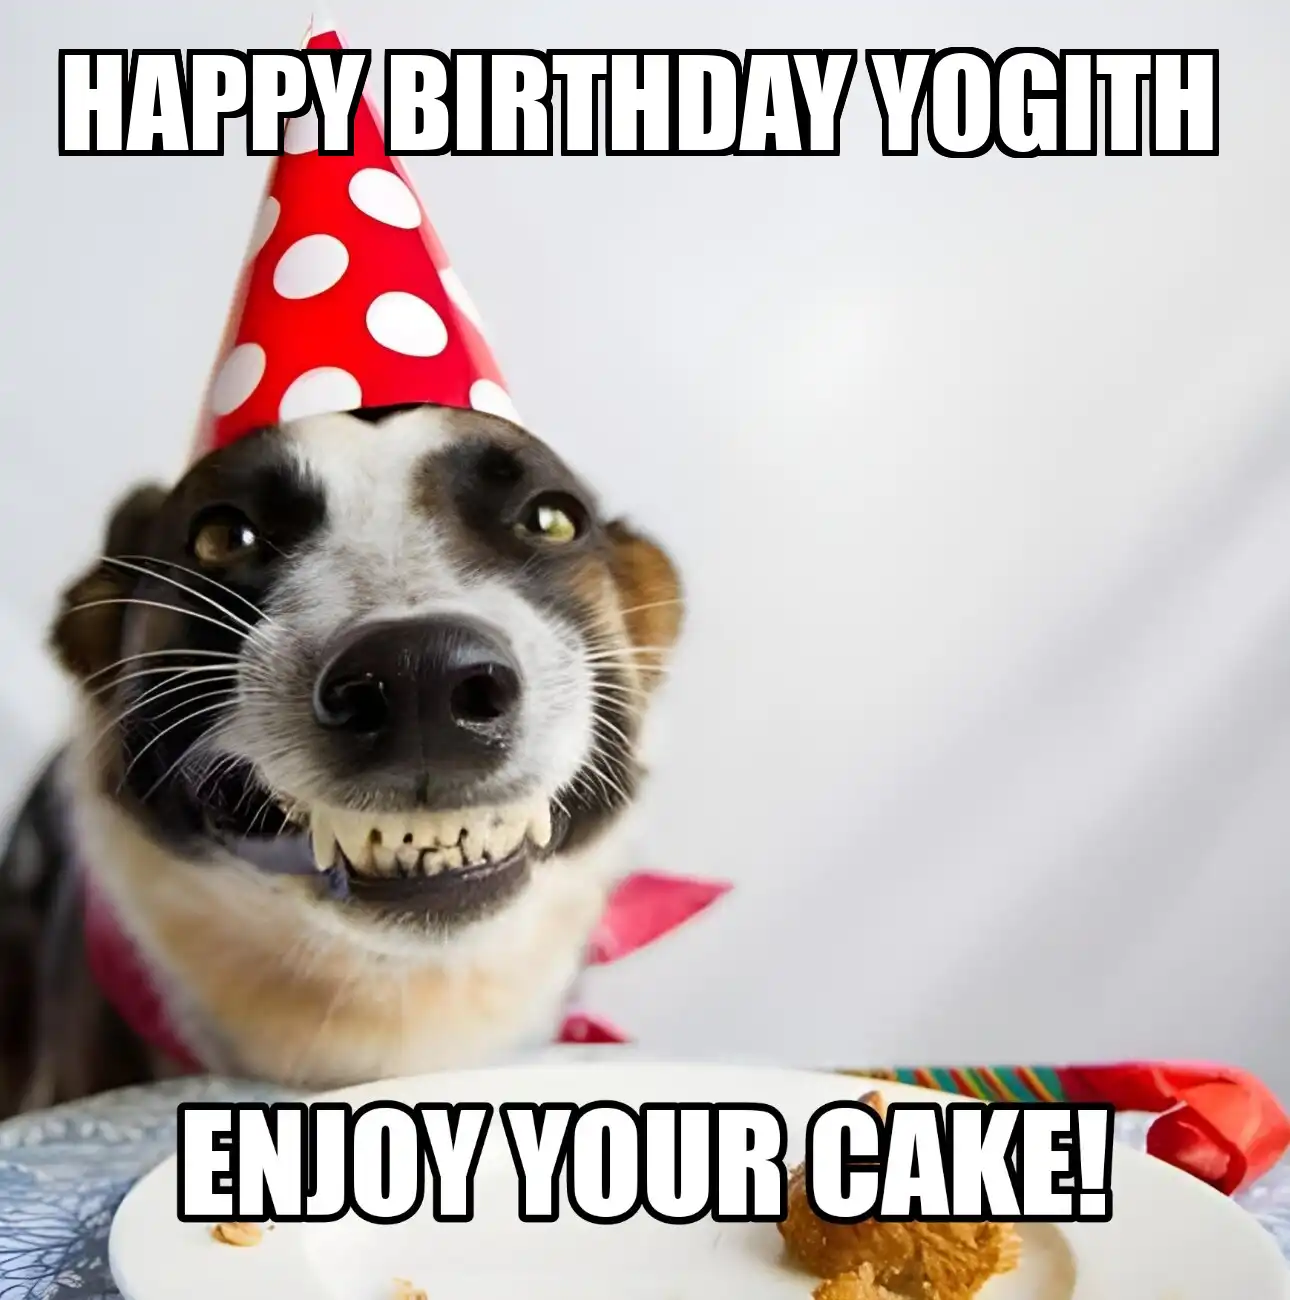 Happy Birthday Yogith Enjoy Your Cake Dog Meme